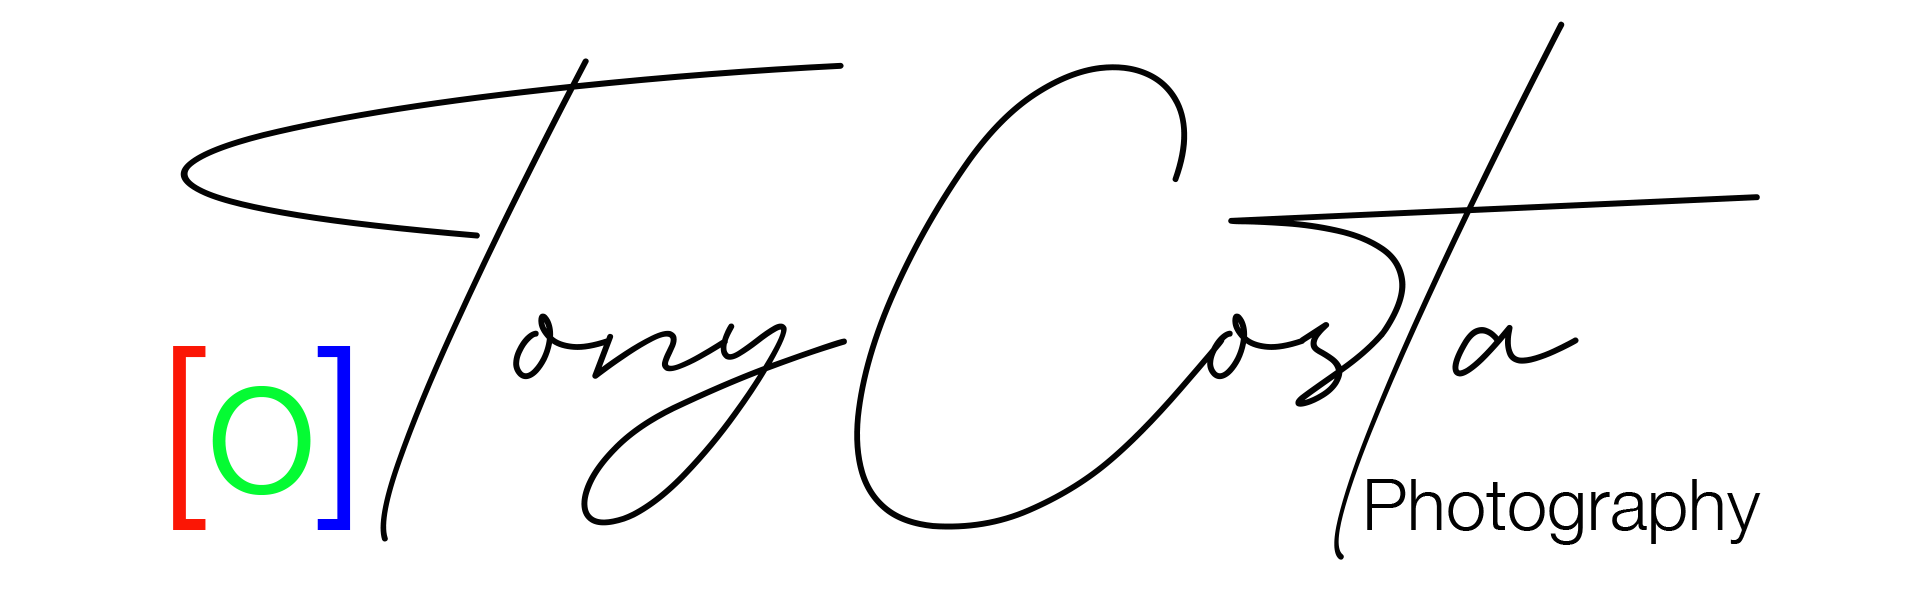 tonycostaphotography-signature-logo-black.png